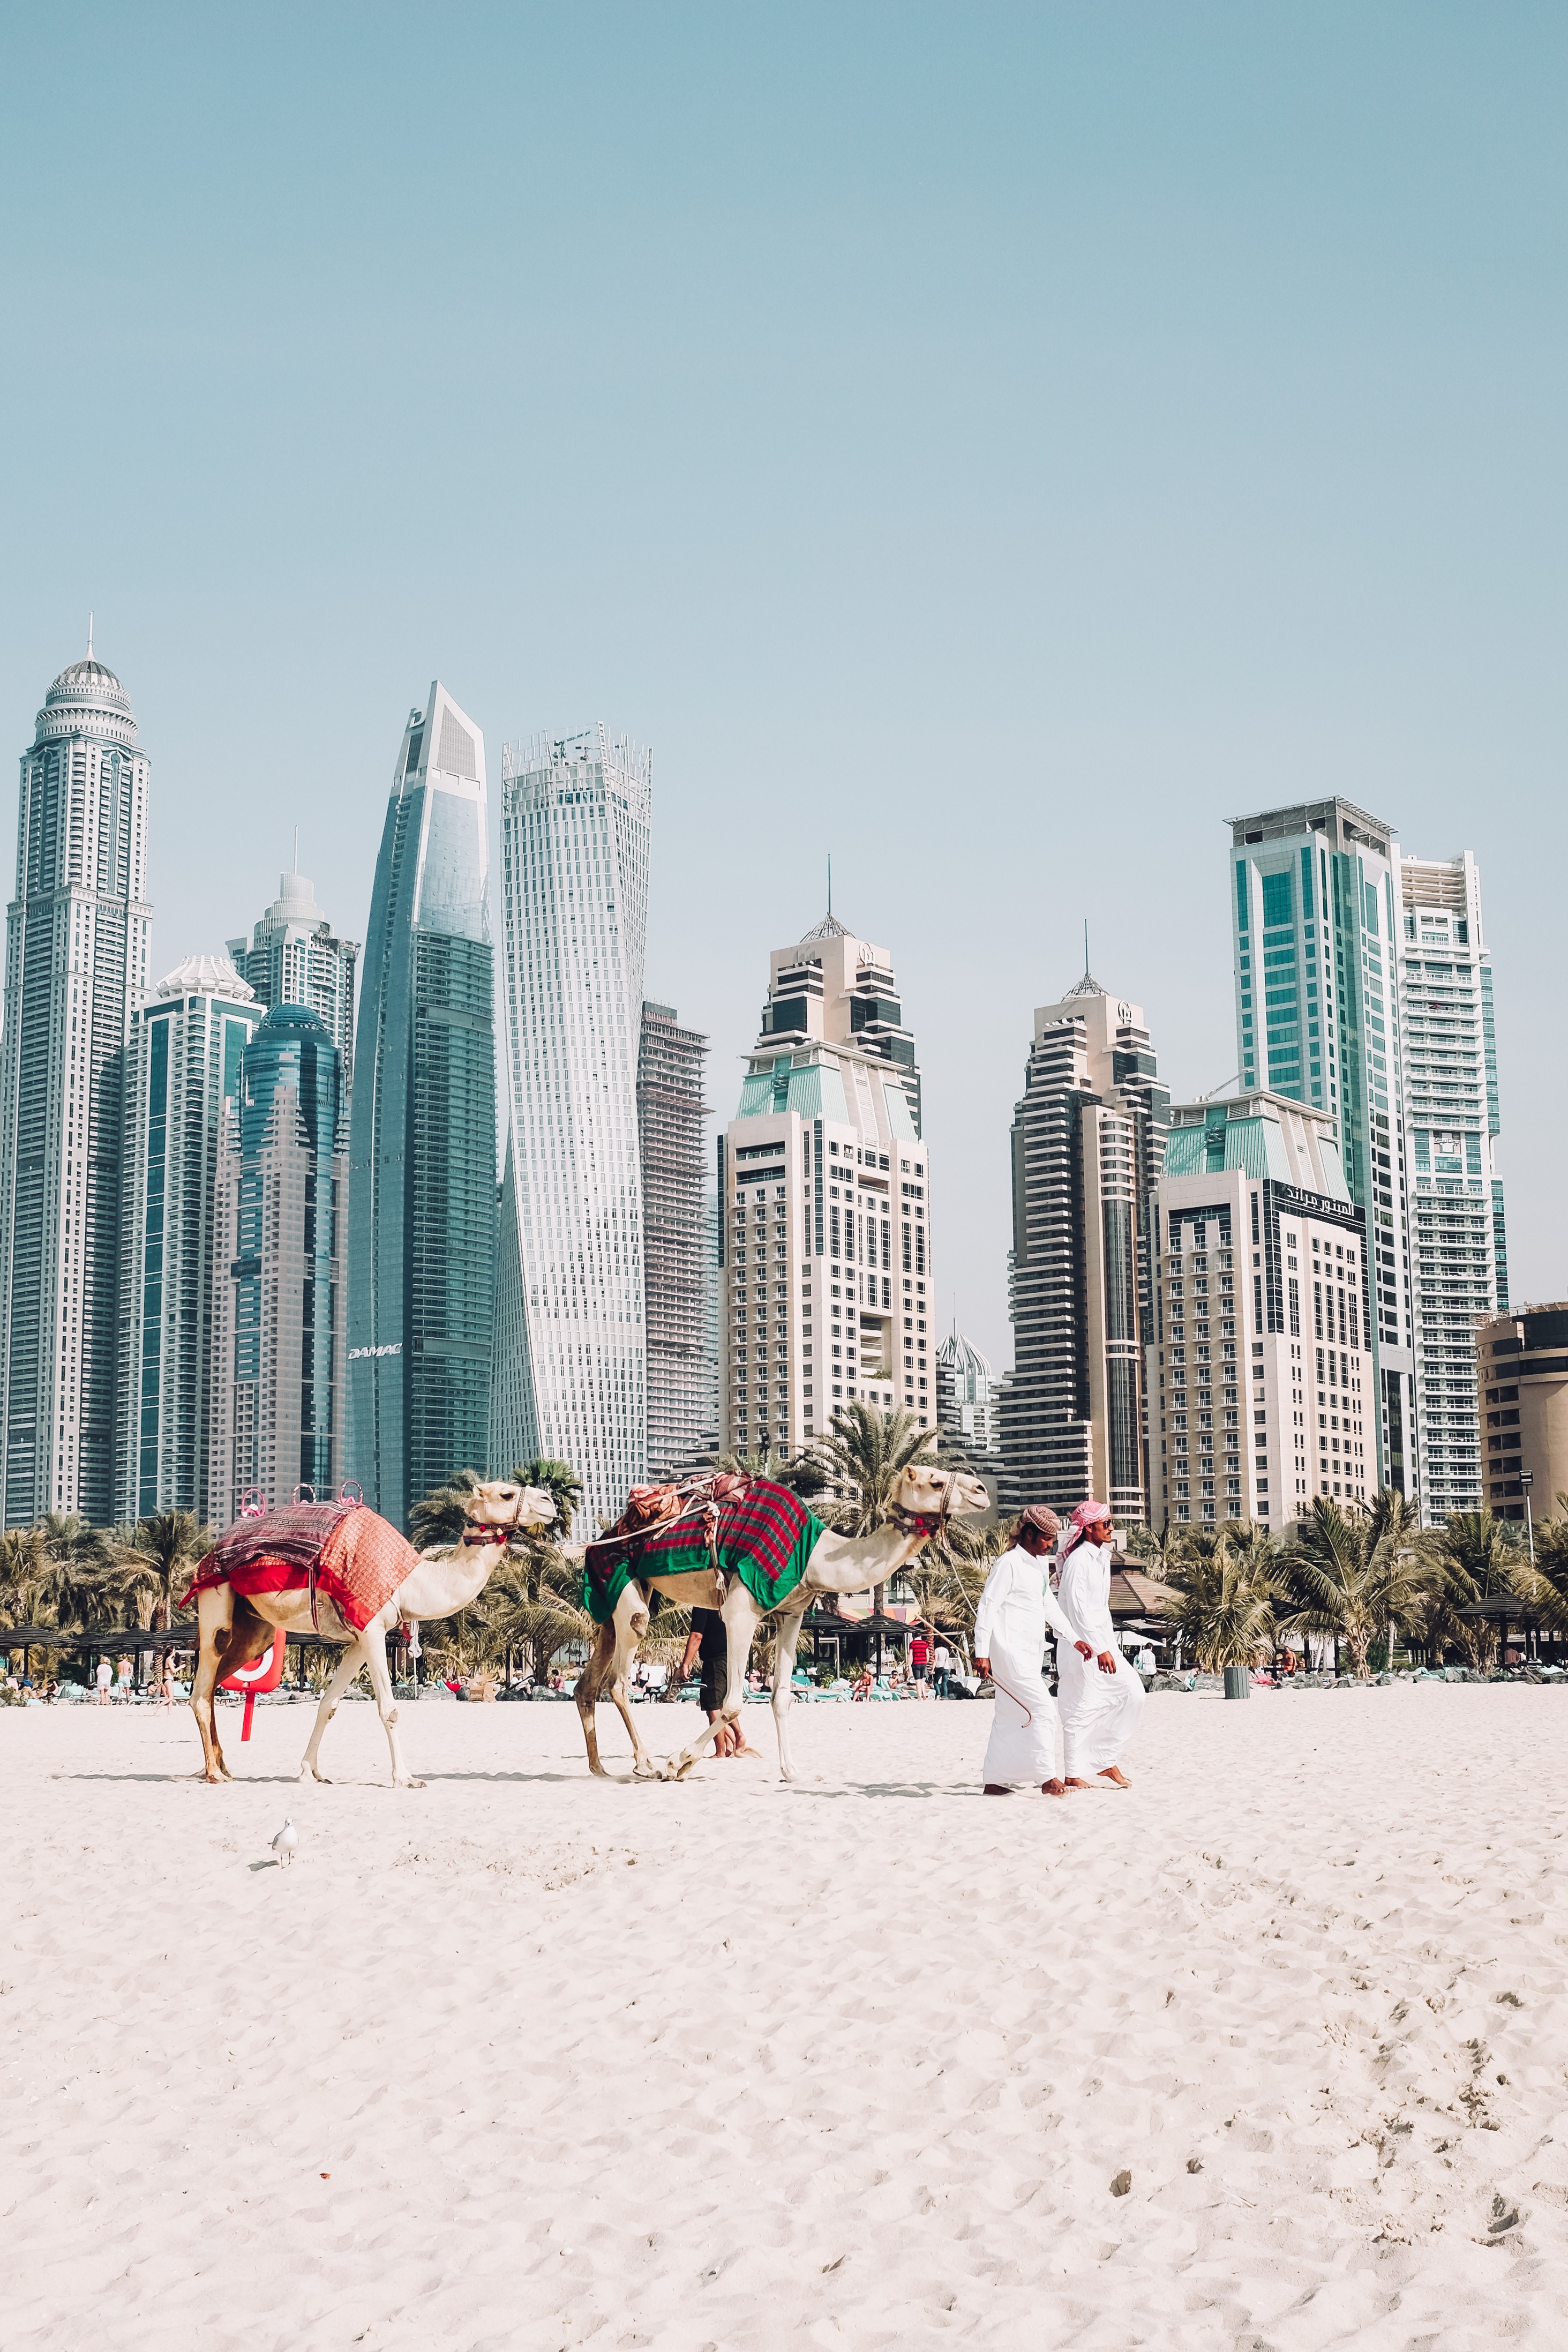 Emcash Offers Dubai Citizens Unsurpassed Convenience